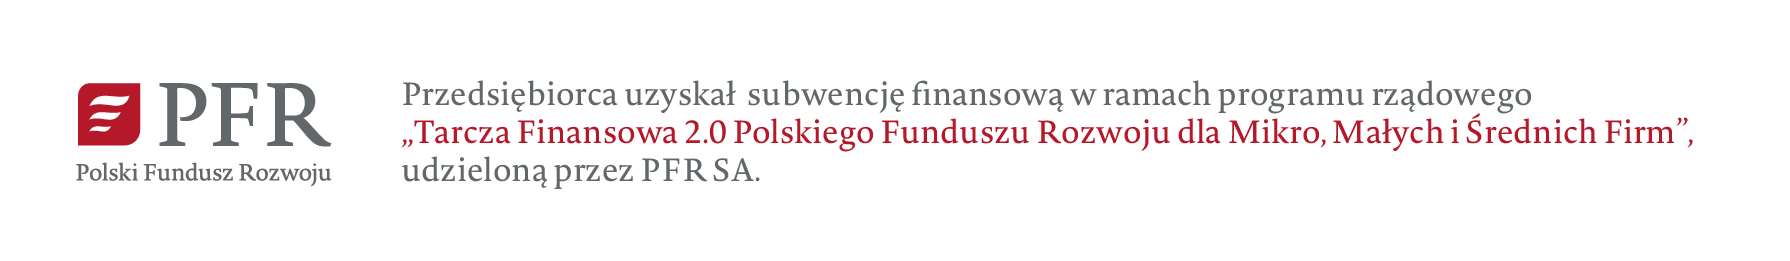 Przedsiębiroca uzyskał subwencję finansowaną w ramach programu rządowego - Tarcza Finansowa 2.0 Polskiego Funduszu Rozwoju Mikro, Małych i Średnich Firm - udzieloną przez PFR SA.